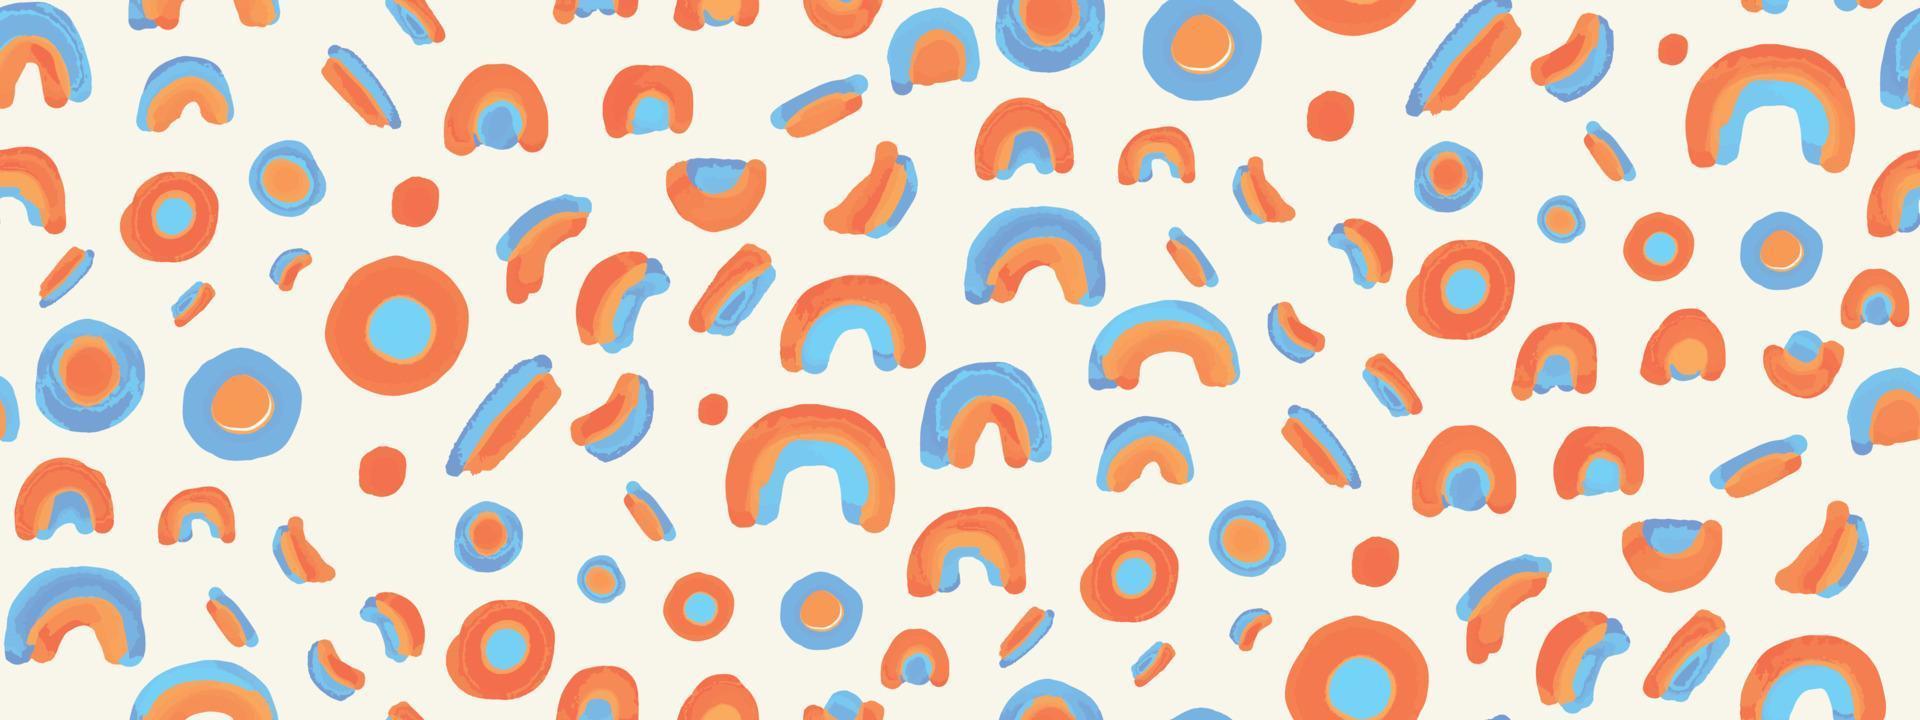 modern cirkel patroon-snoep oranje pret en speels ontwerp vector waterverf rondes patroon en inkt tekening, reeks een grunge cirkels achtergrond, kinderen meetkundig en pastel naadloos waterverf rondes patroon